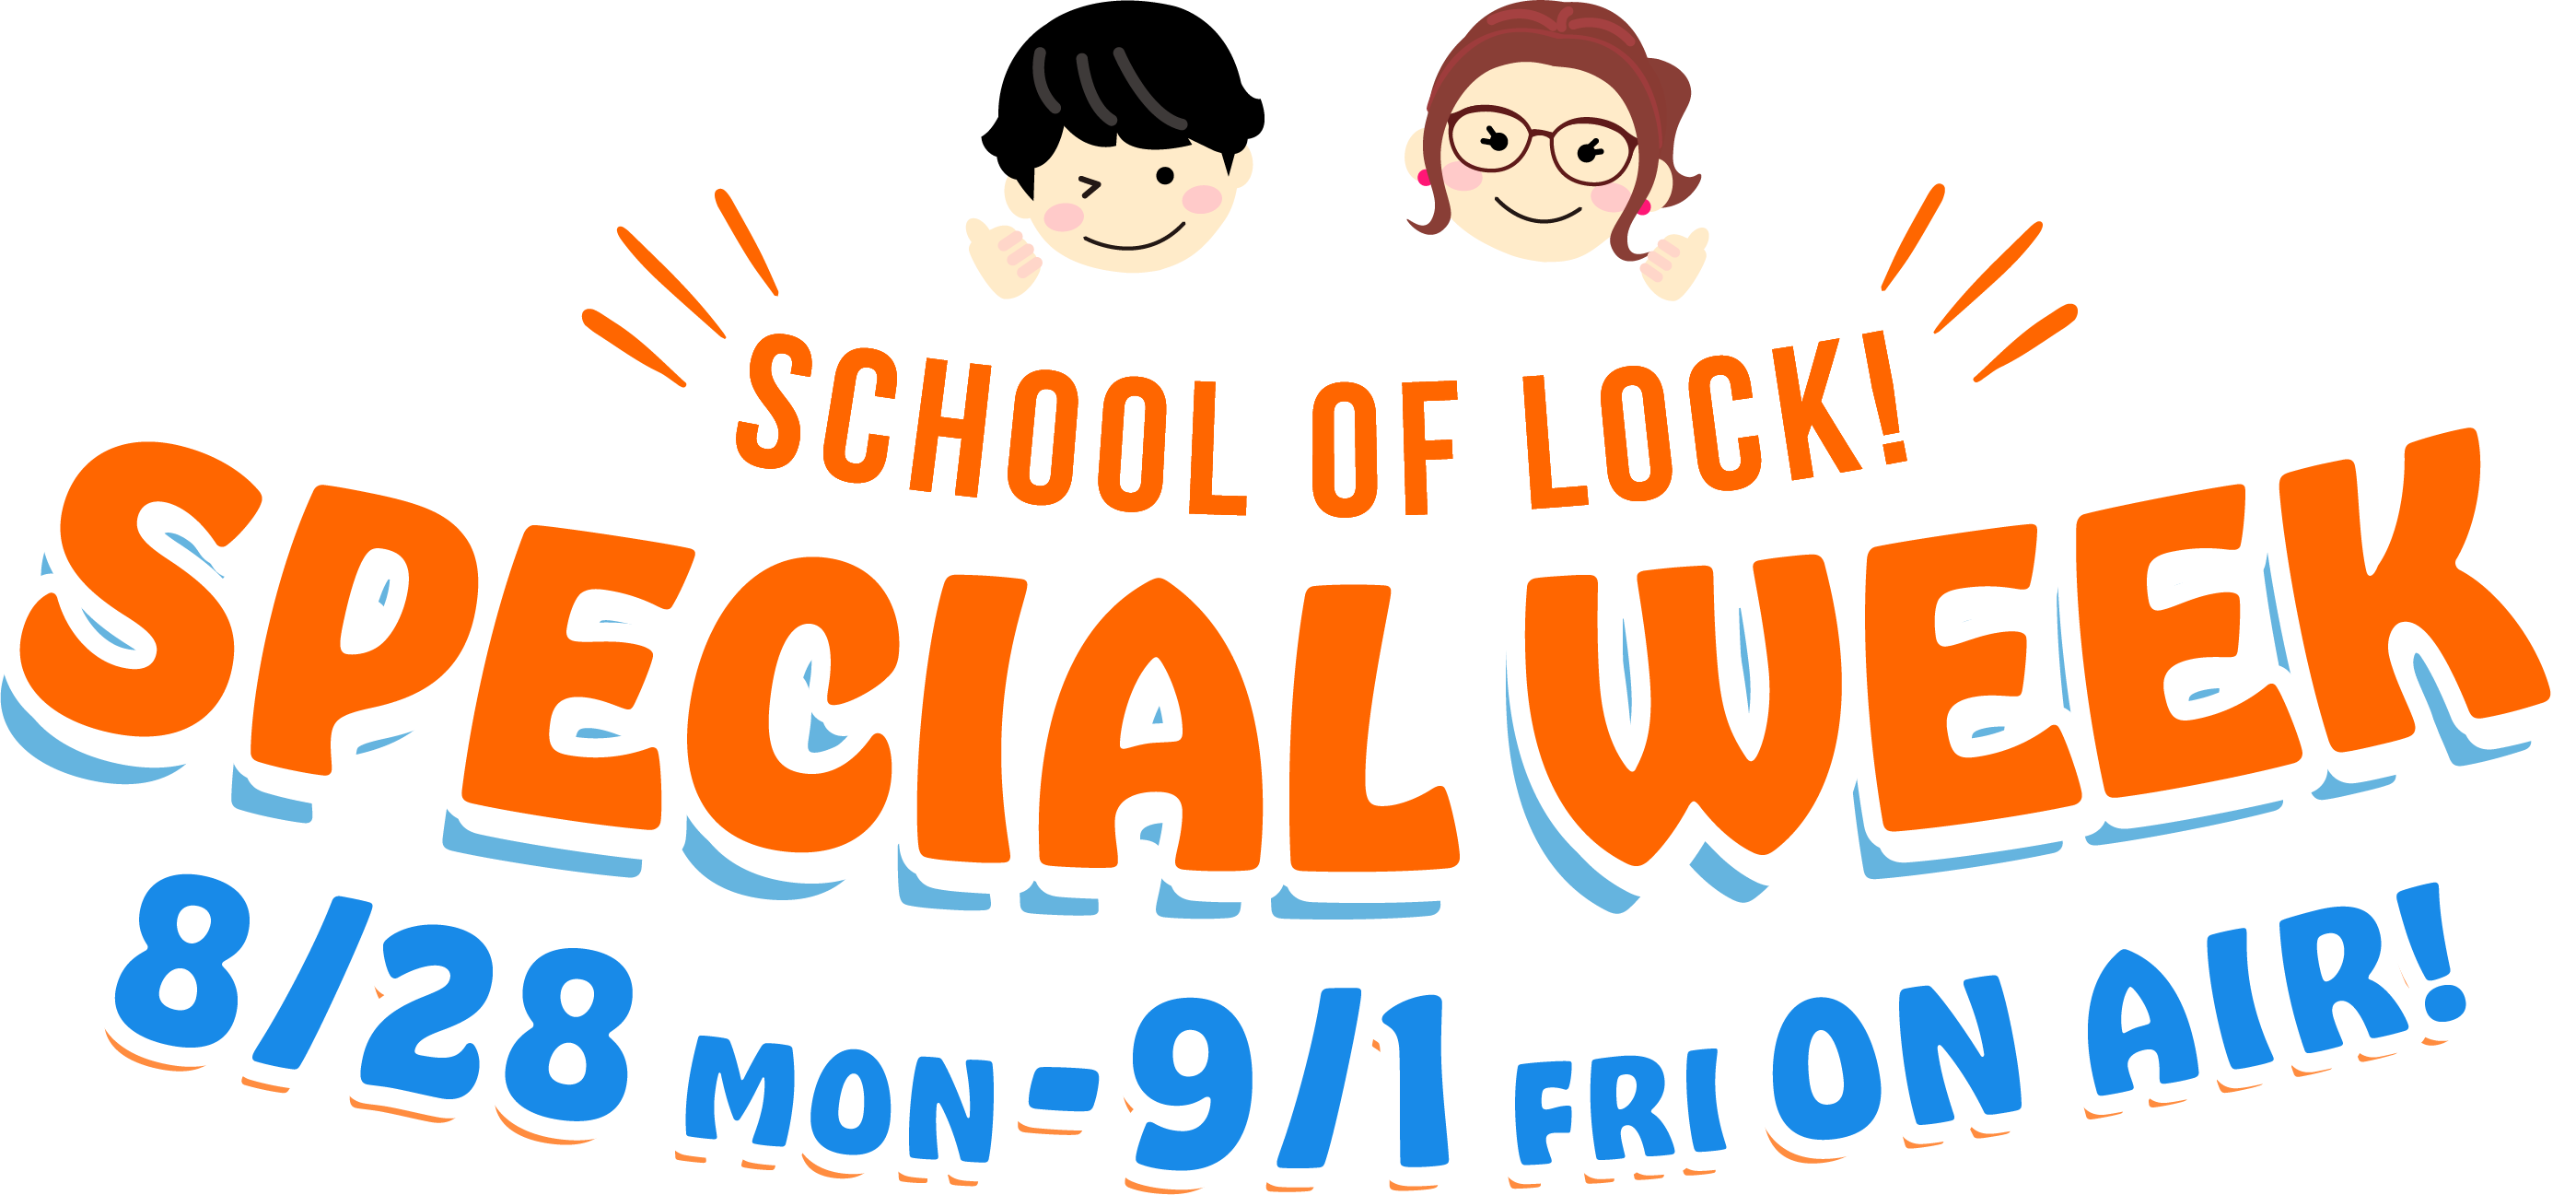 SCHOOL OF LOCK! SPECIAL WEEK 8.28 MON-9.1 FRI 22:00- ON AIR!